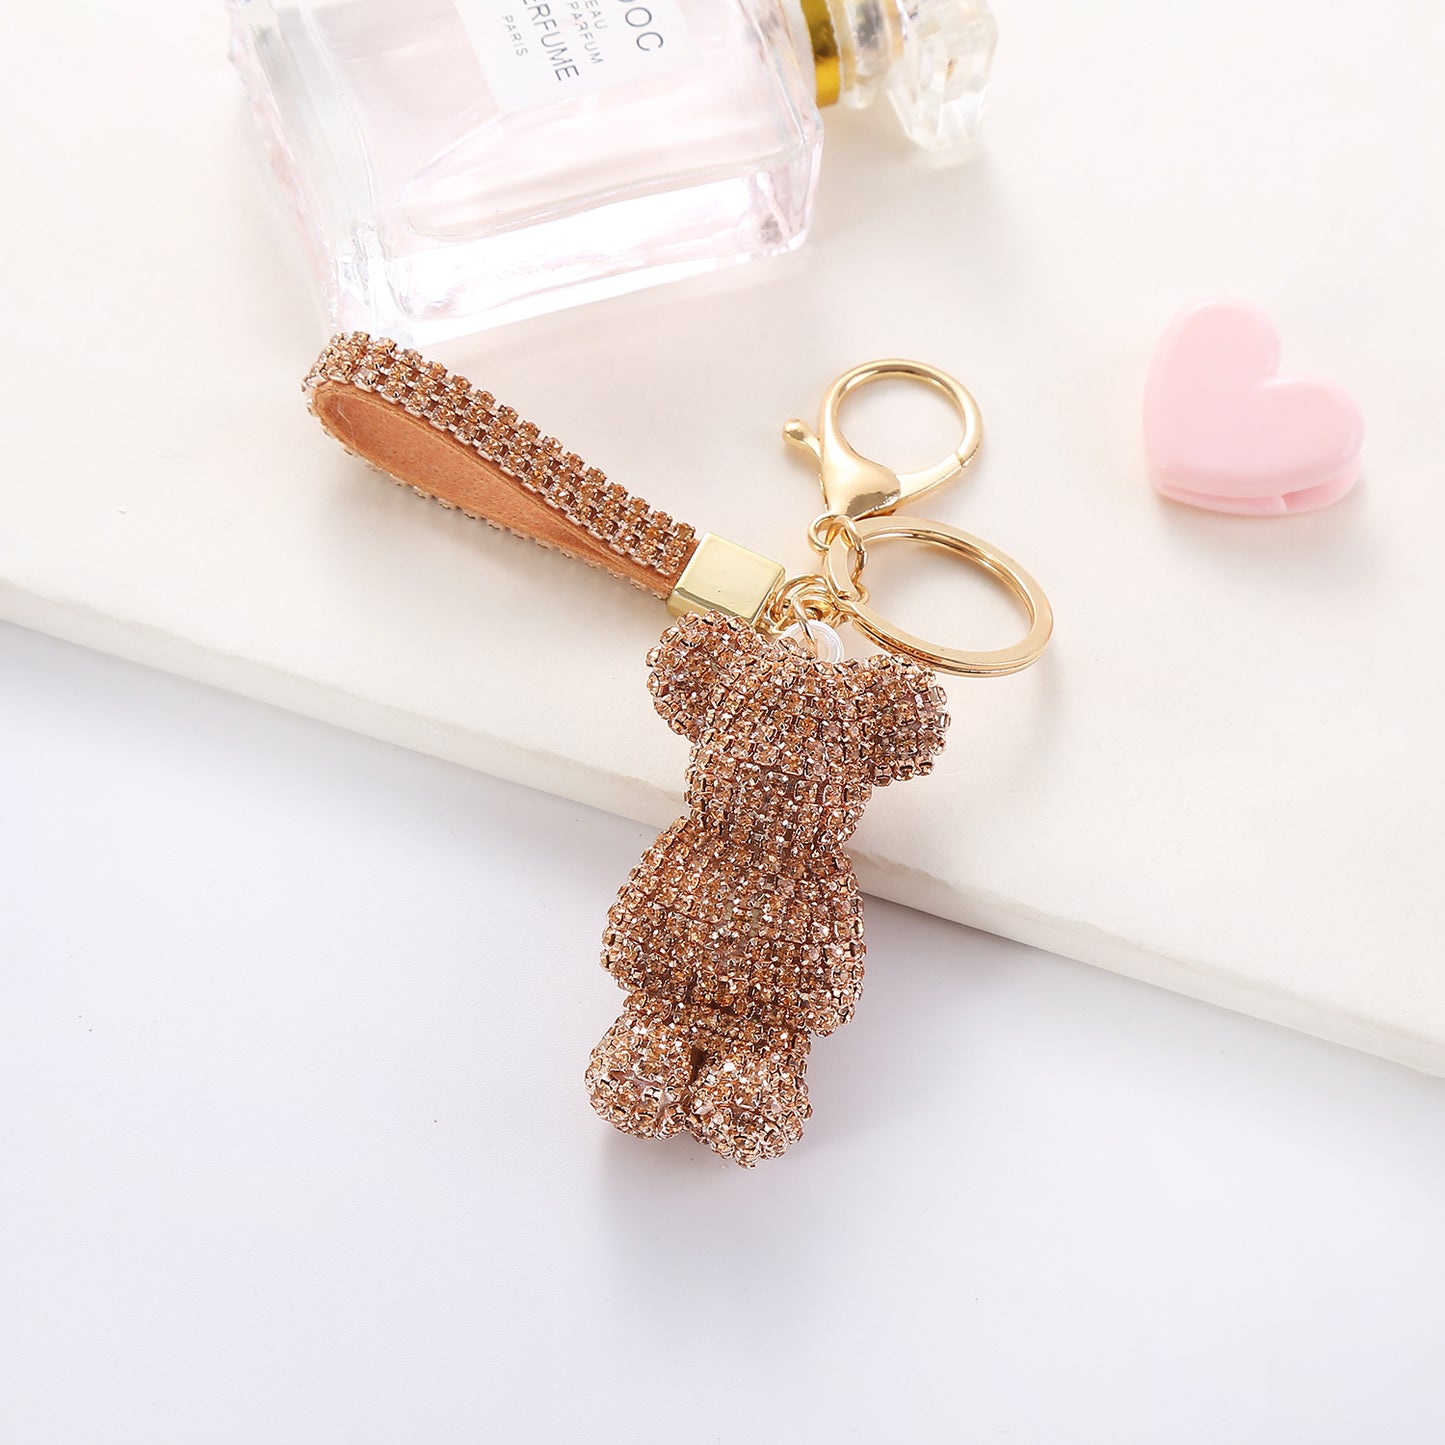 Women's Fashion Creative Cartoon Diamond Little Bear Doll Keychain